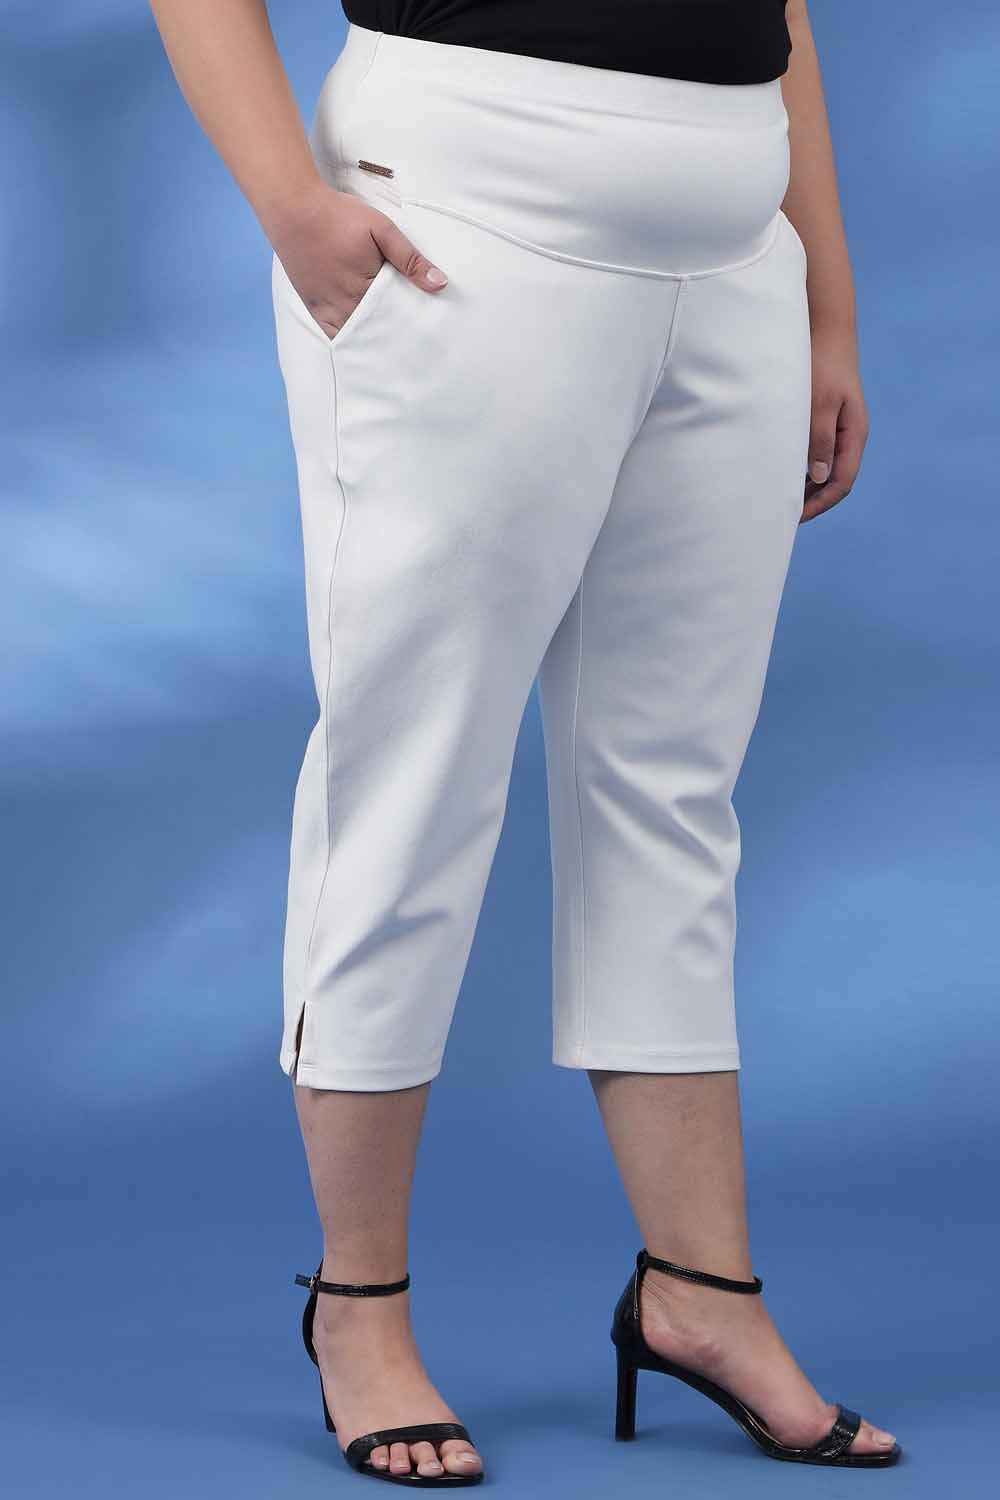 Plus Size Capris For Women - Cotton Capri Pants - Olive Green